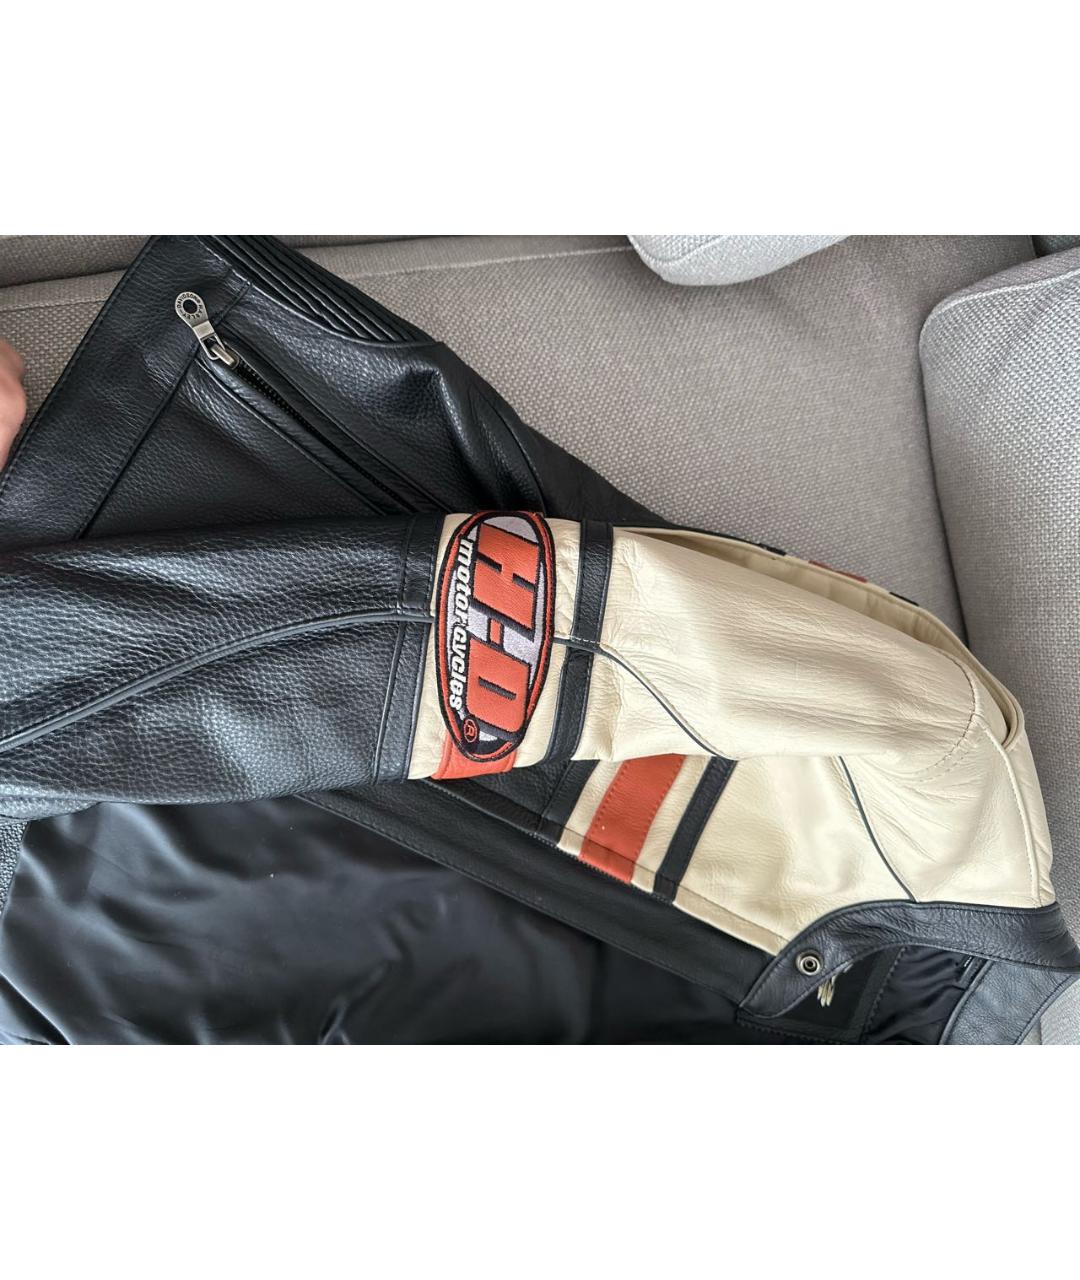 Harley Davidson Черная кожаная куртка, фото 7